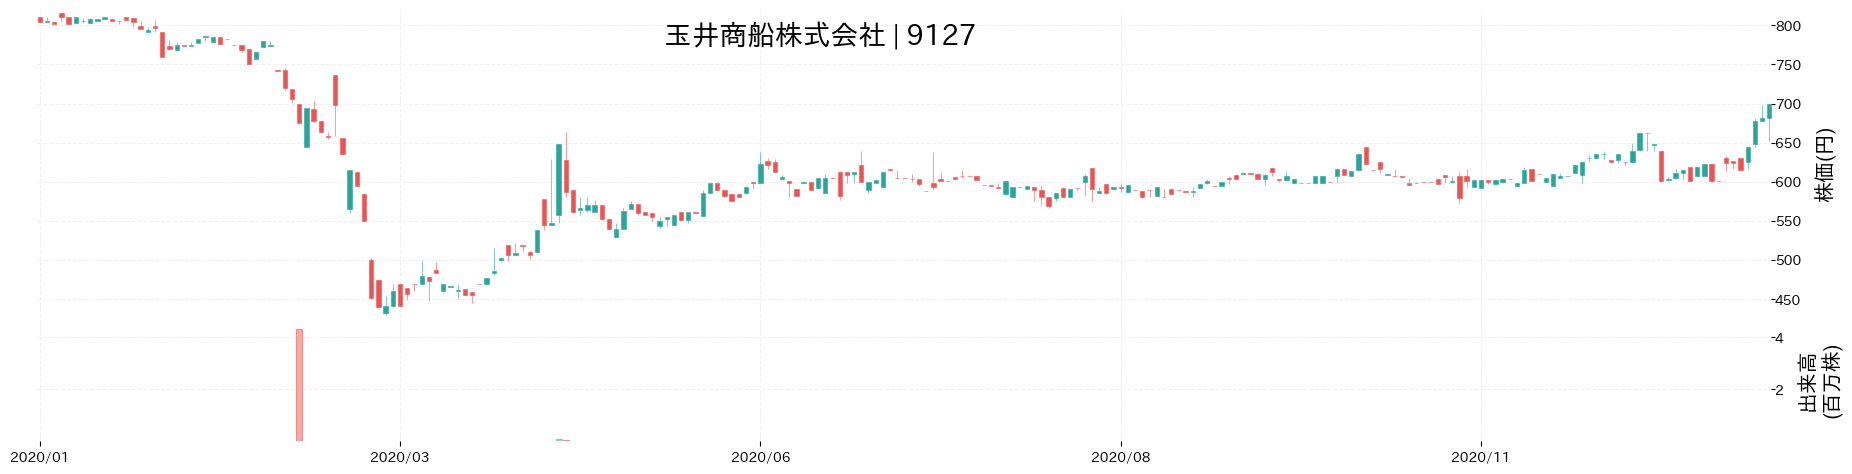 玉井商船の株価推移(2020)